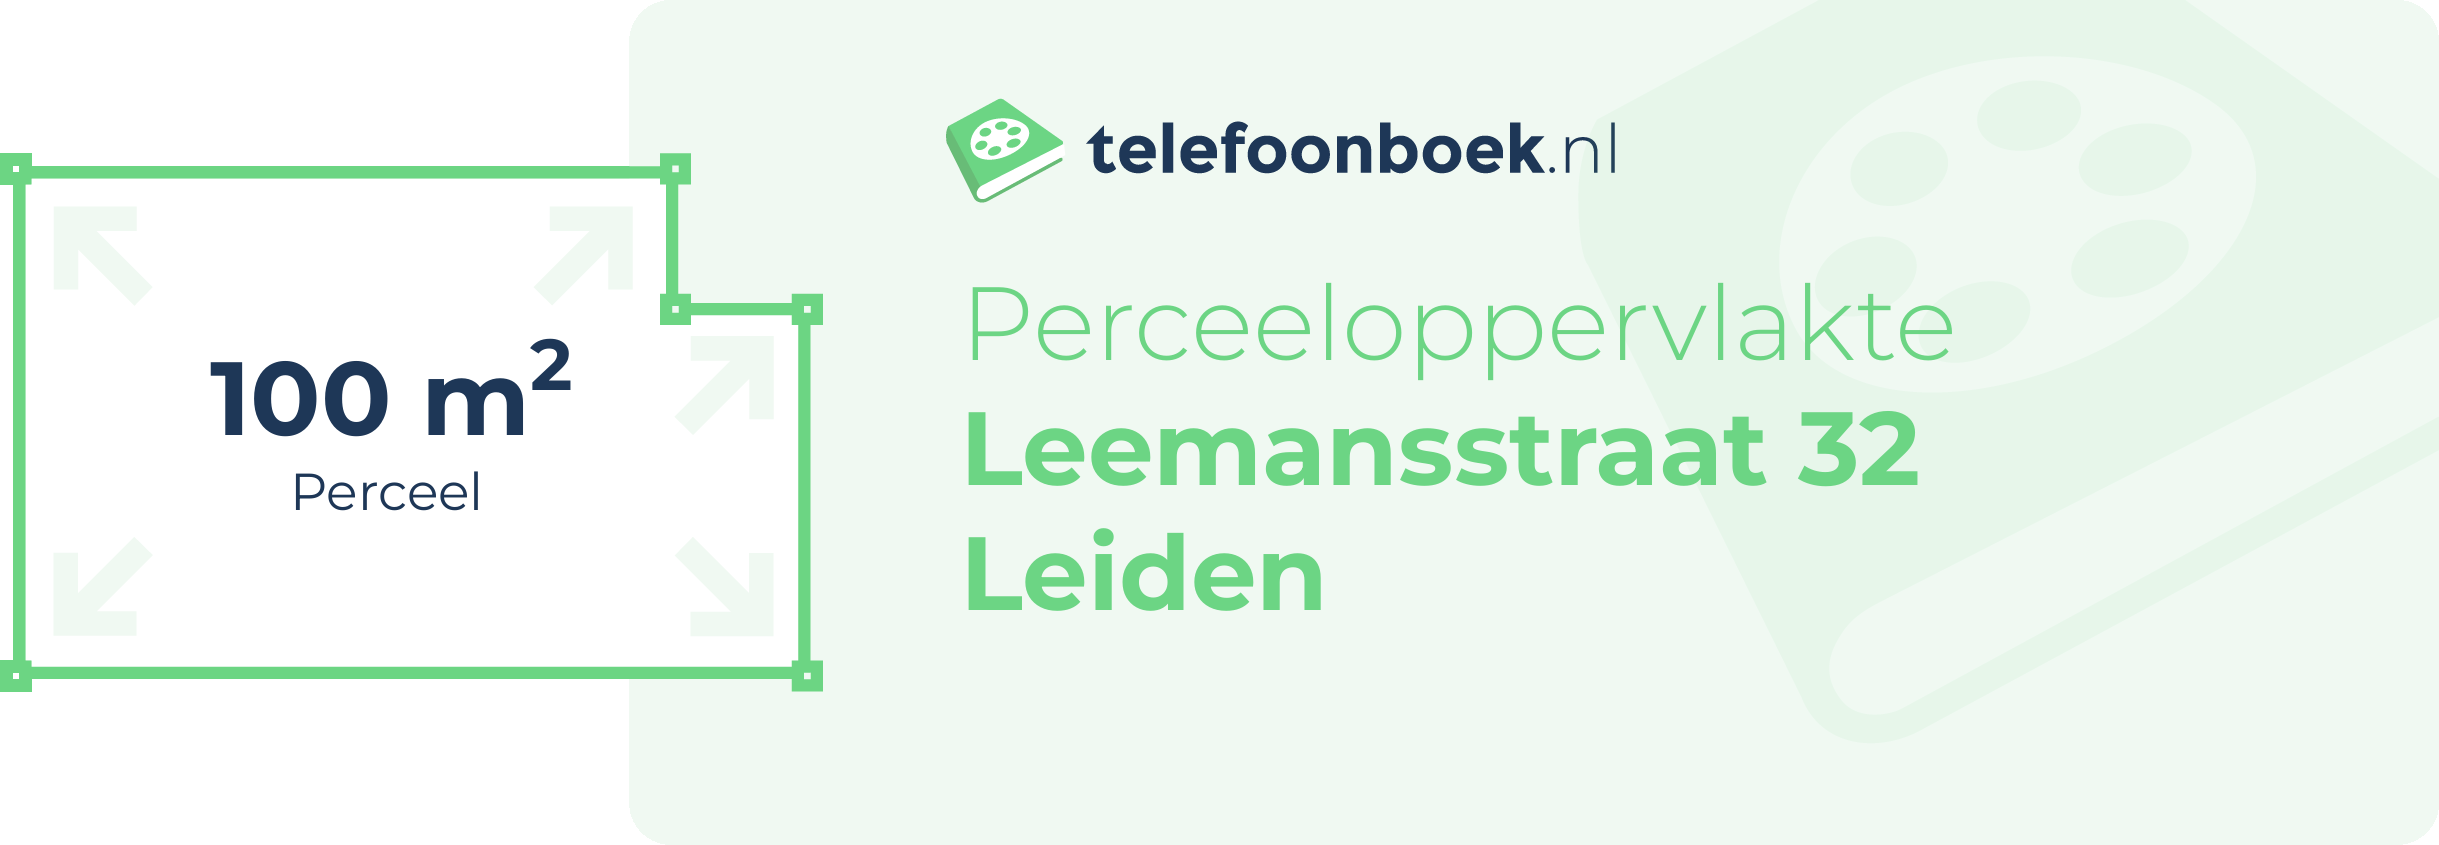 Perceeloppervlakte Leemansstraat 32 Leiden